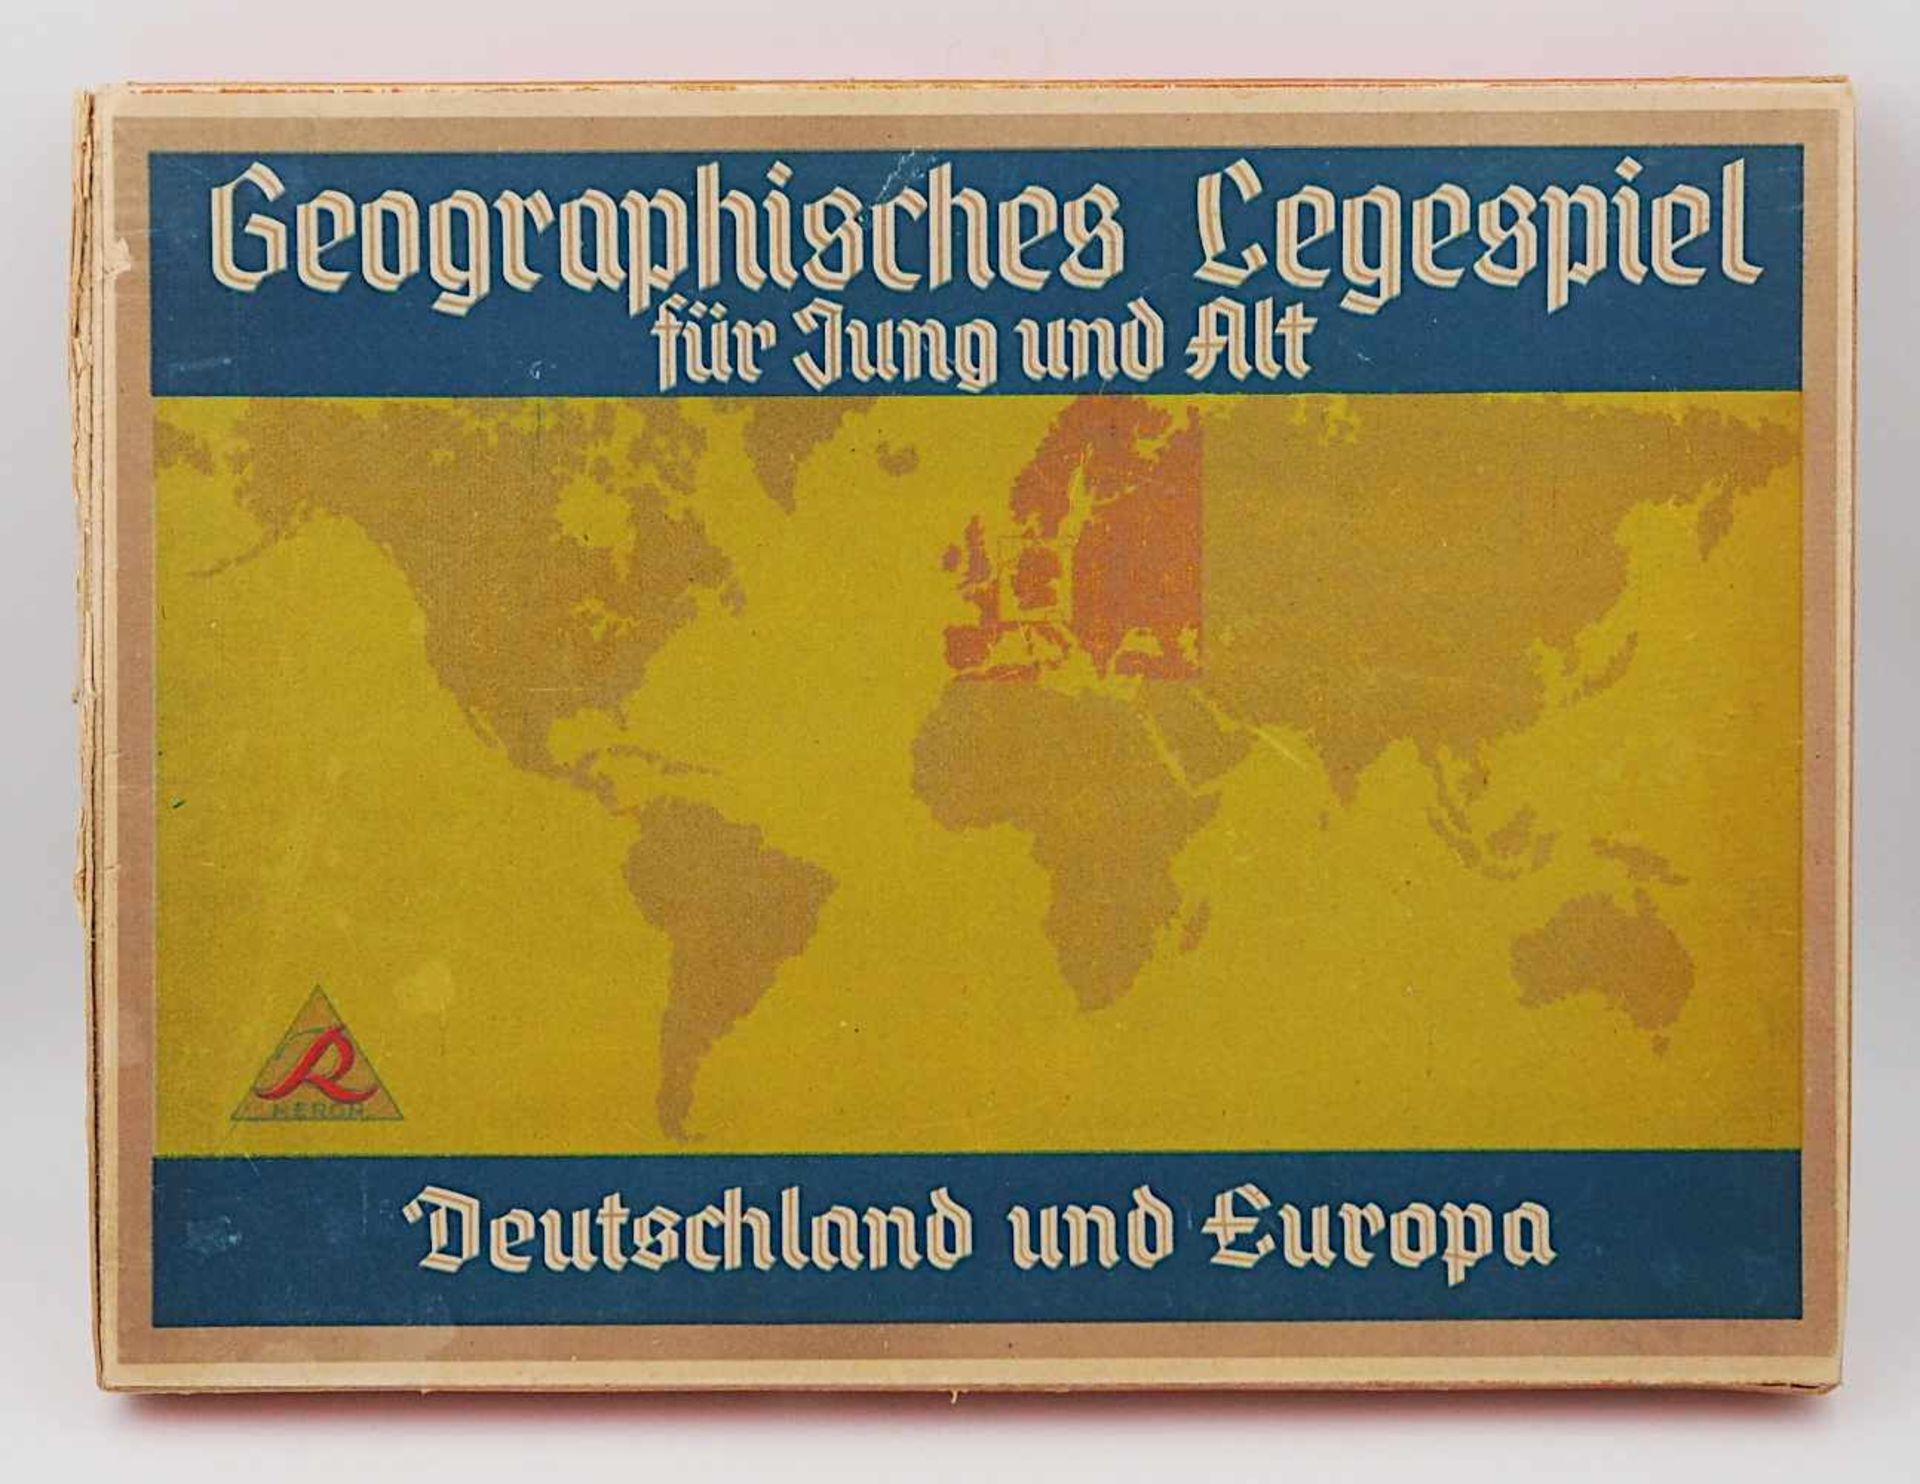 1 Brettspiel "Geographisches Legespiel für Jung und Alt/Deutschland und Europa" HERON wohl 1945